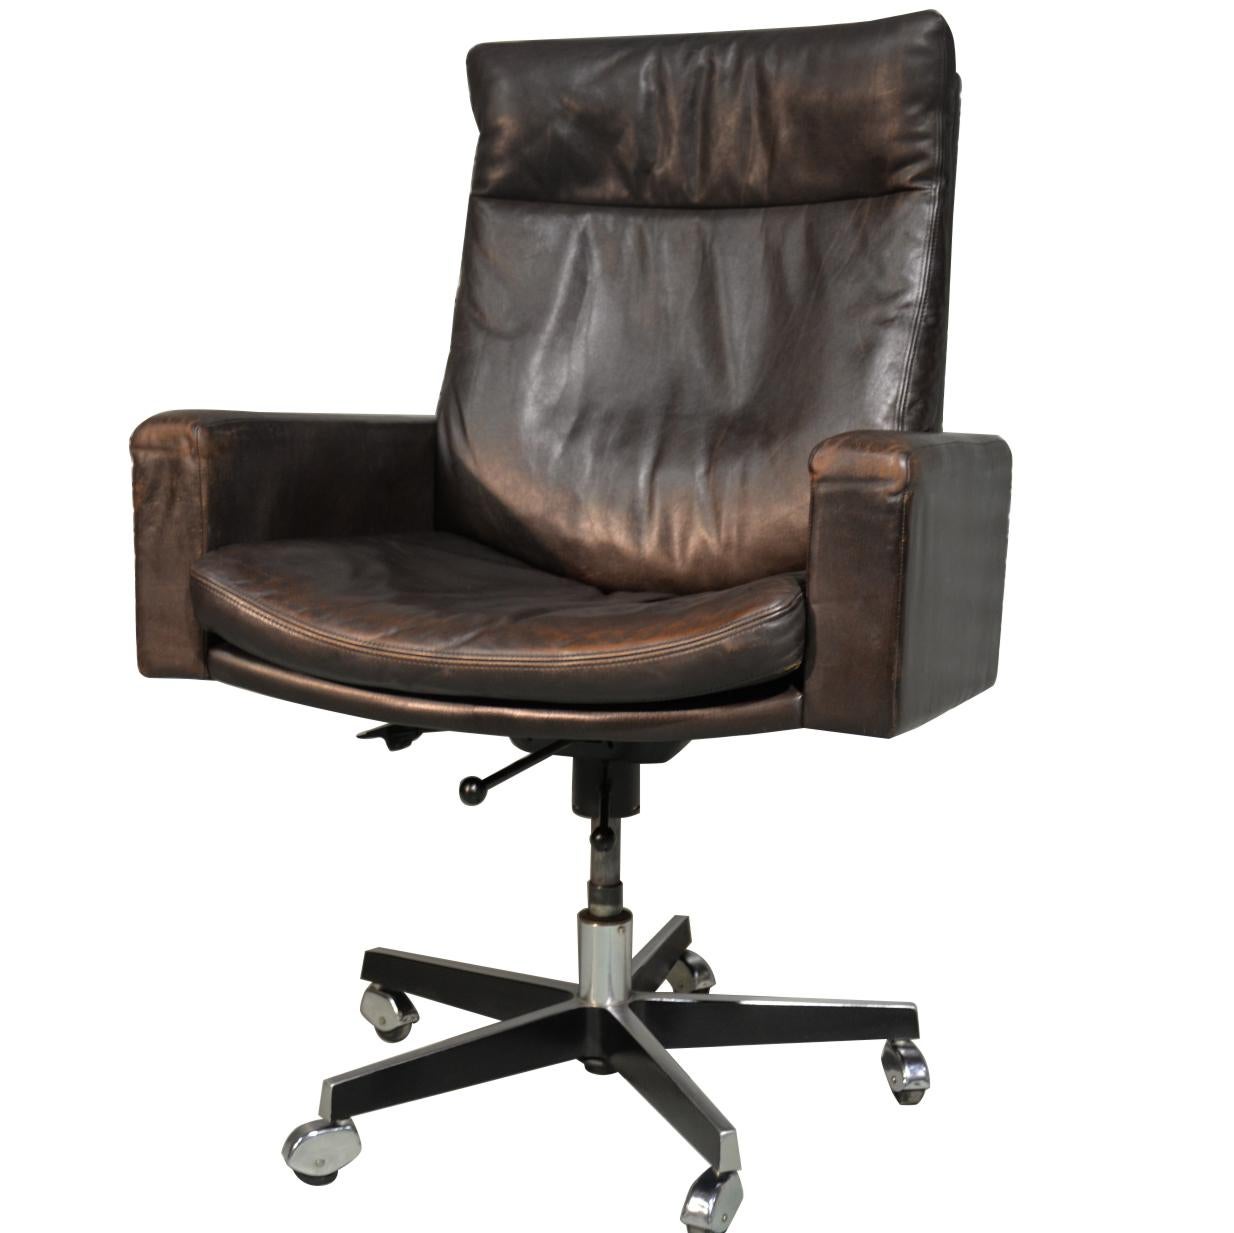  De Sede RH201 Executive Swivel armchair by Robert Haussmann, Switzerland 1957